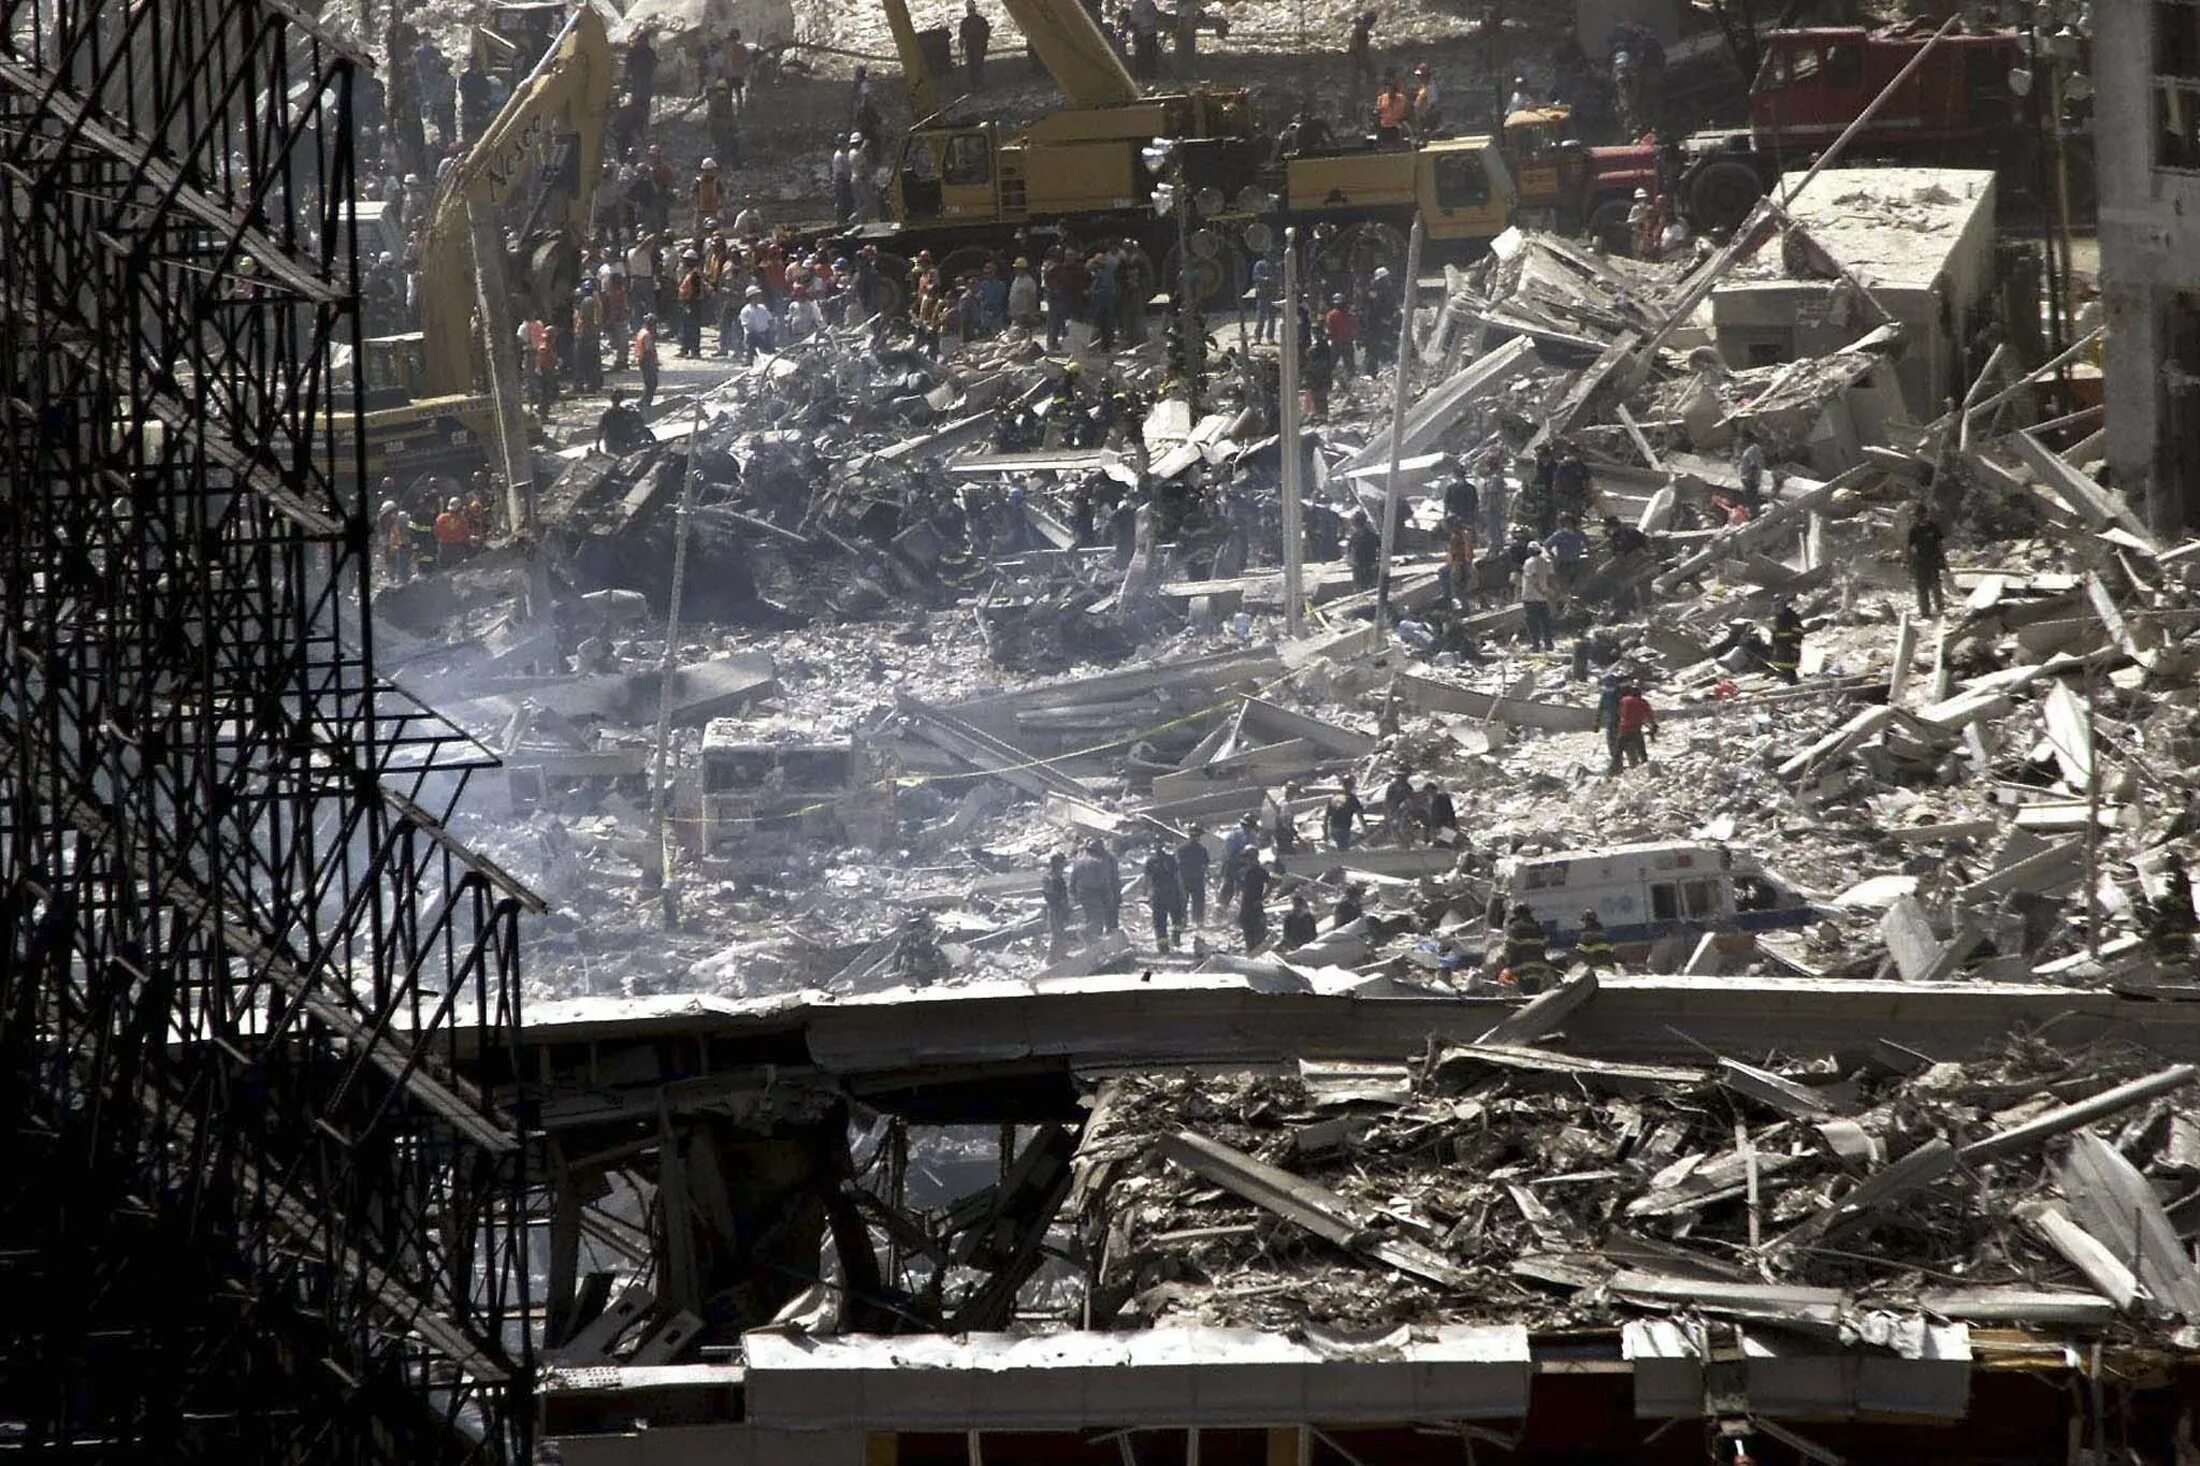 11 сентября сколько погибших 2001 башни. Башни-Близнецы 11 сентября 2001. Разрушенные башни Близнецы 11 сентября. Башни Близнецы 2001 внутри.